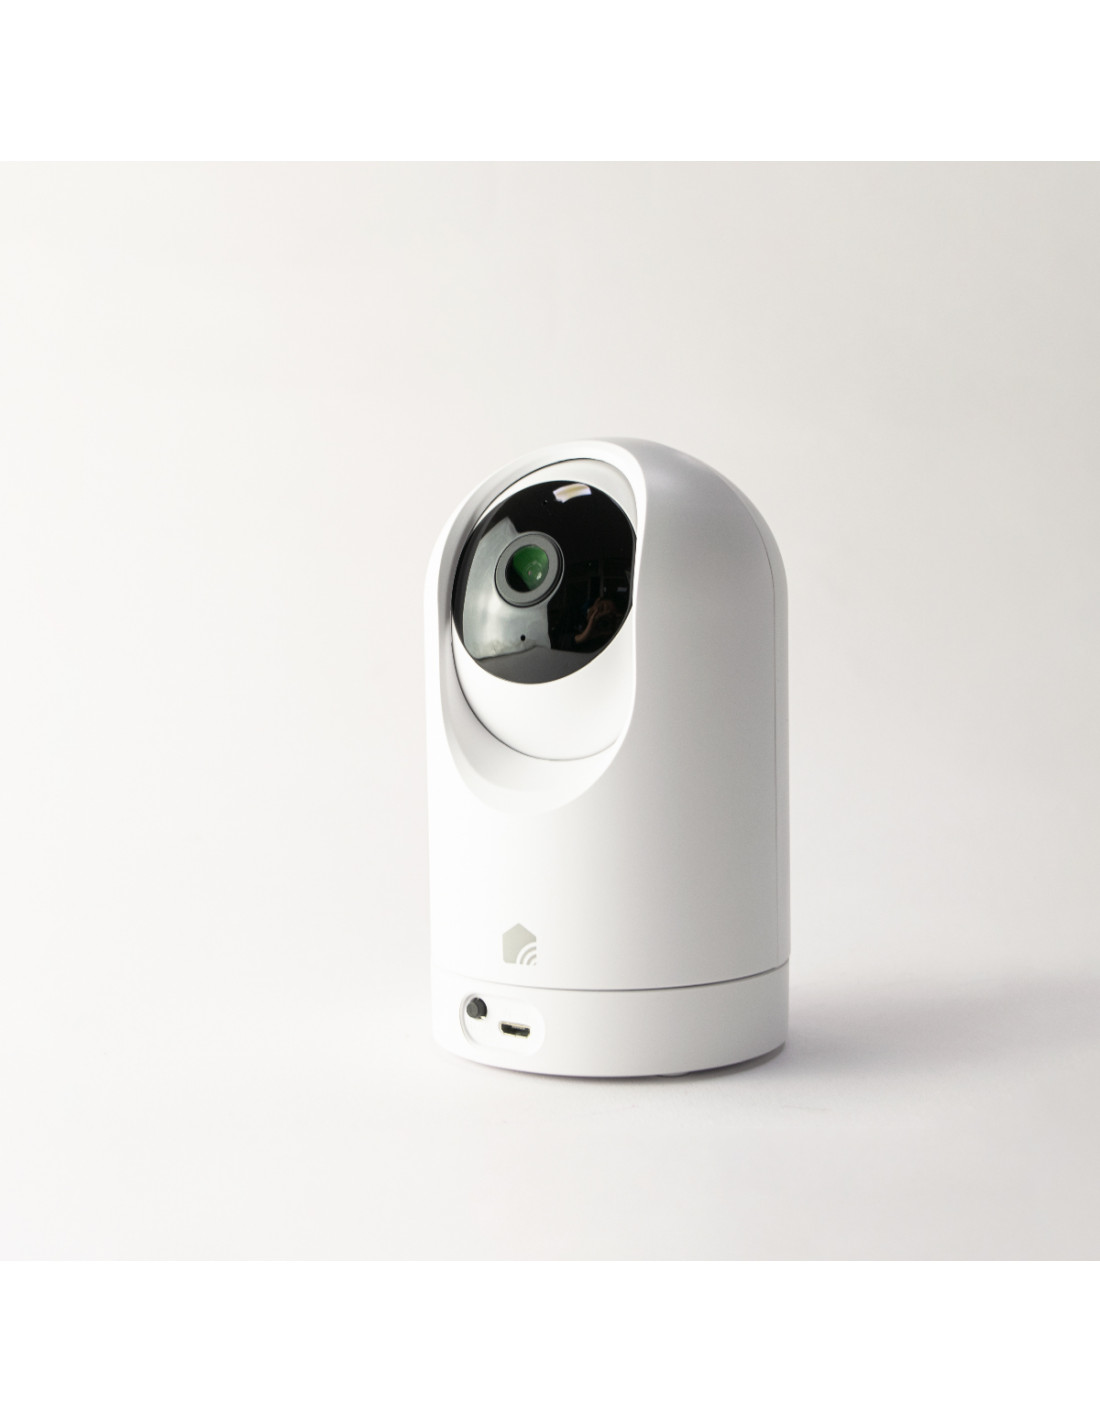 Con estas dos cámaras de vigilancia tendrás tu casa controlada y